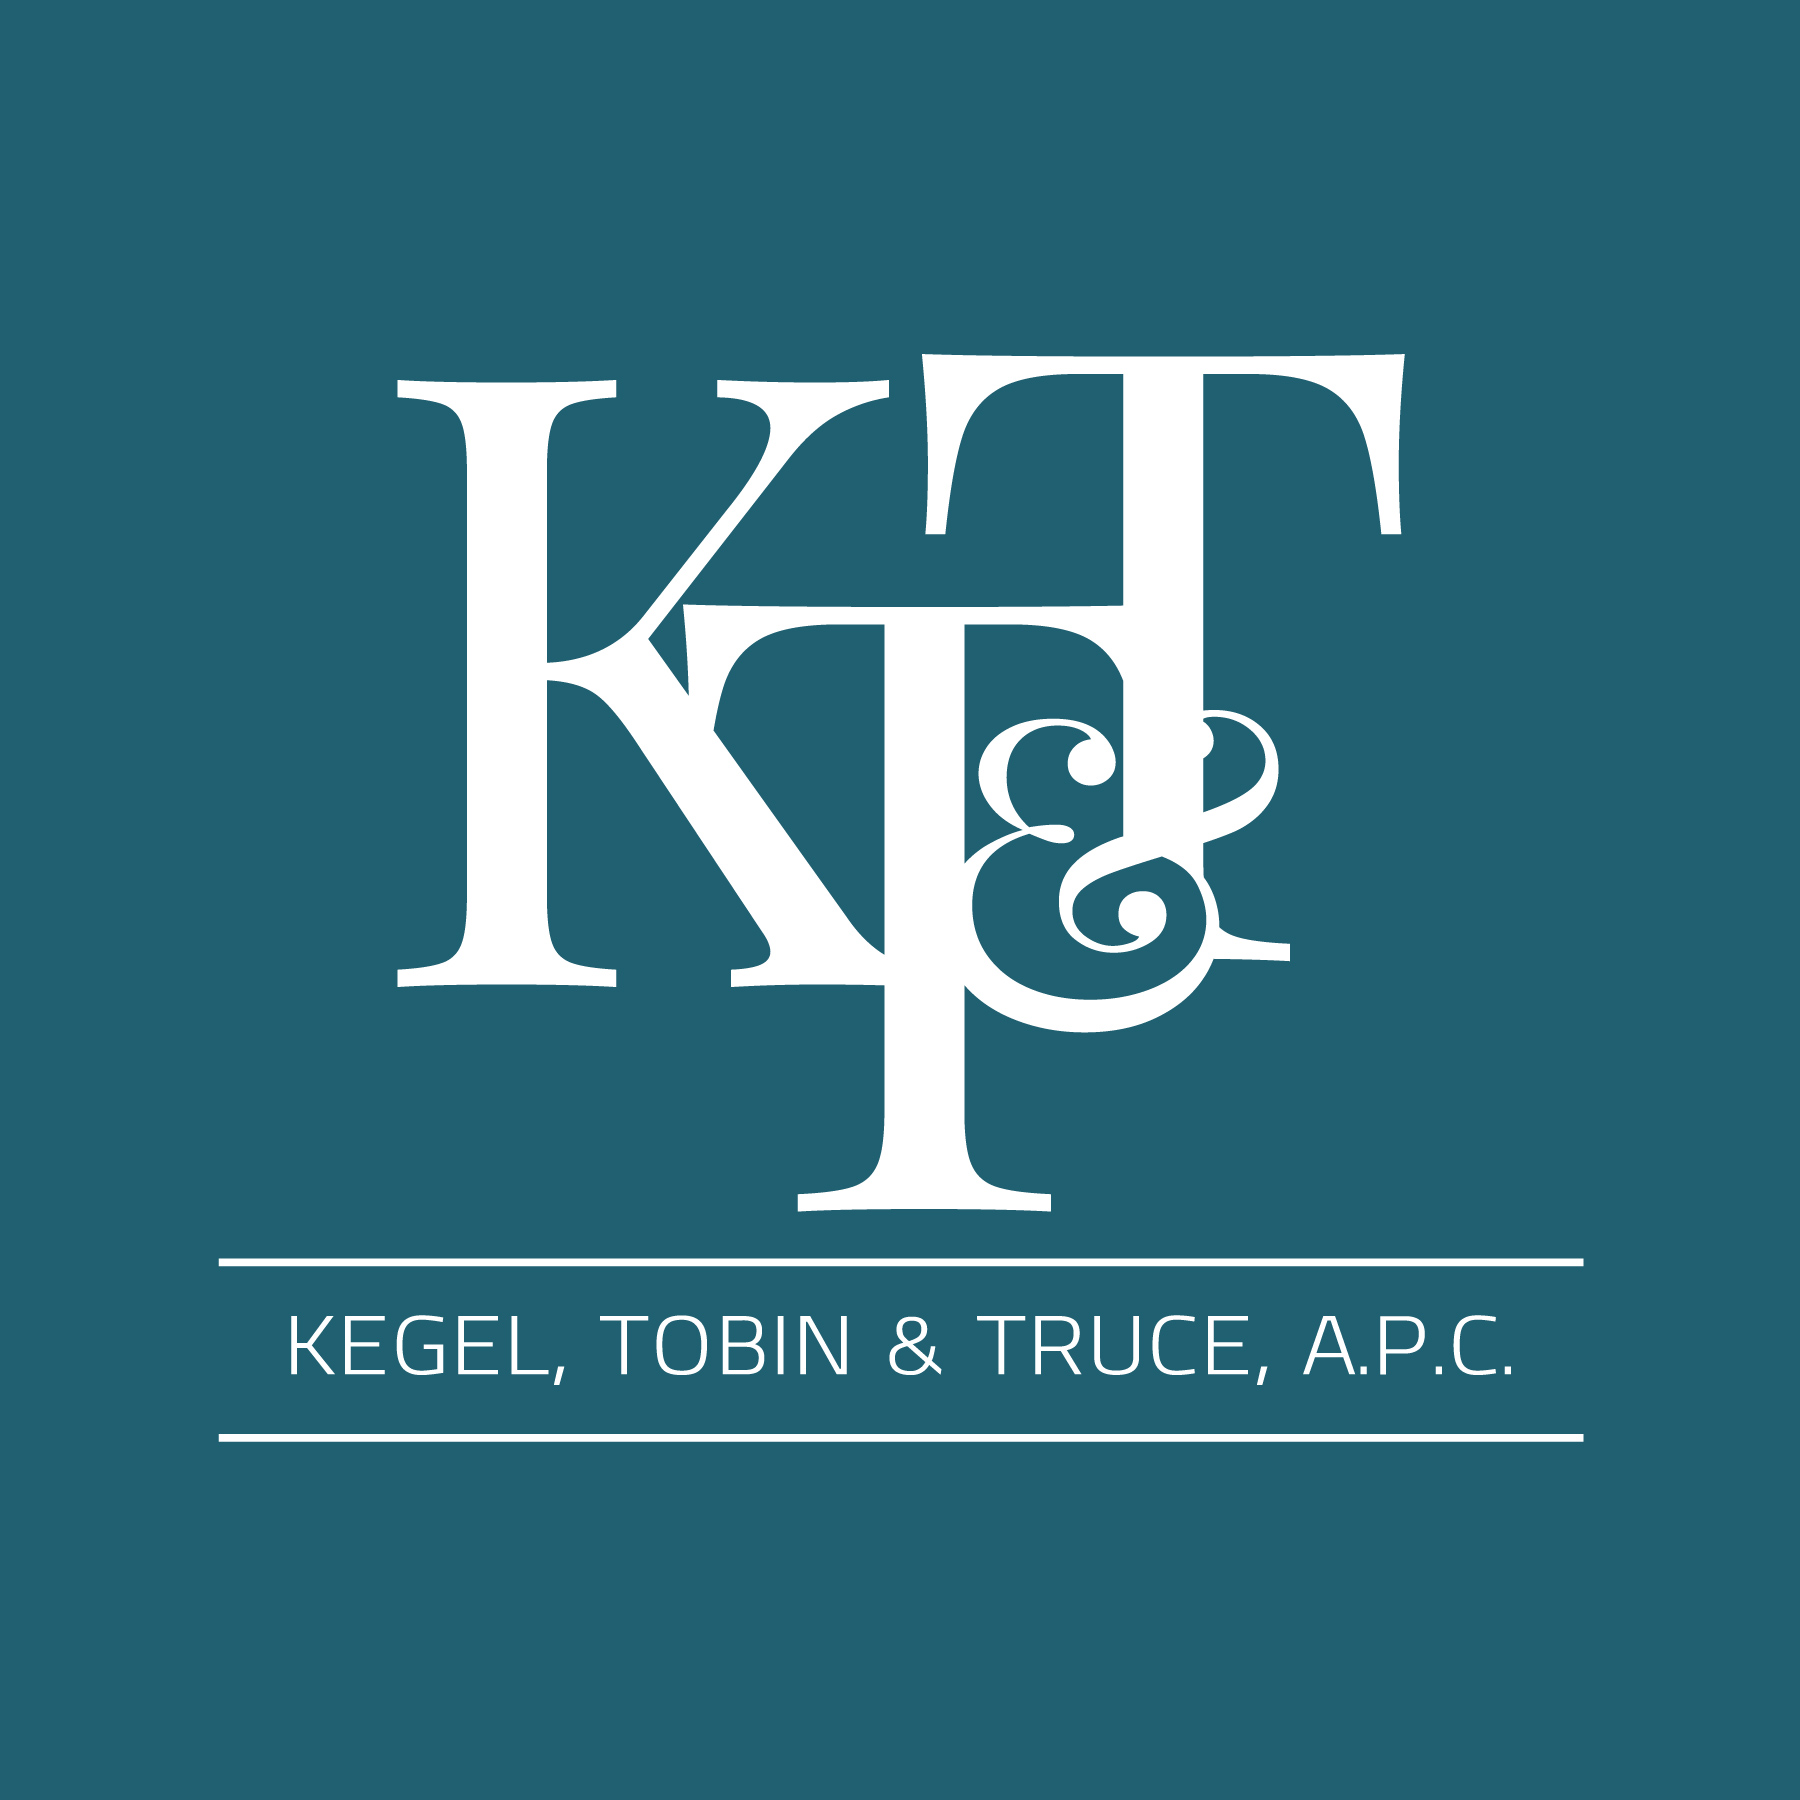 Kegel, Tobin & Truce, A.P.C